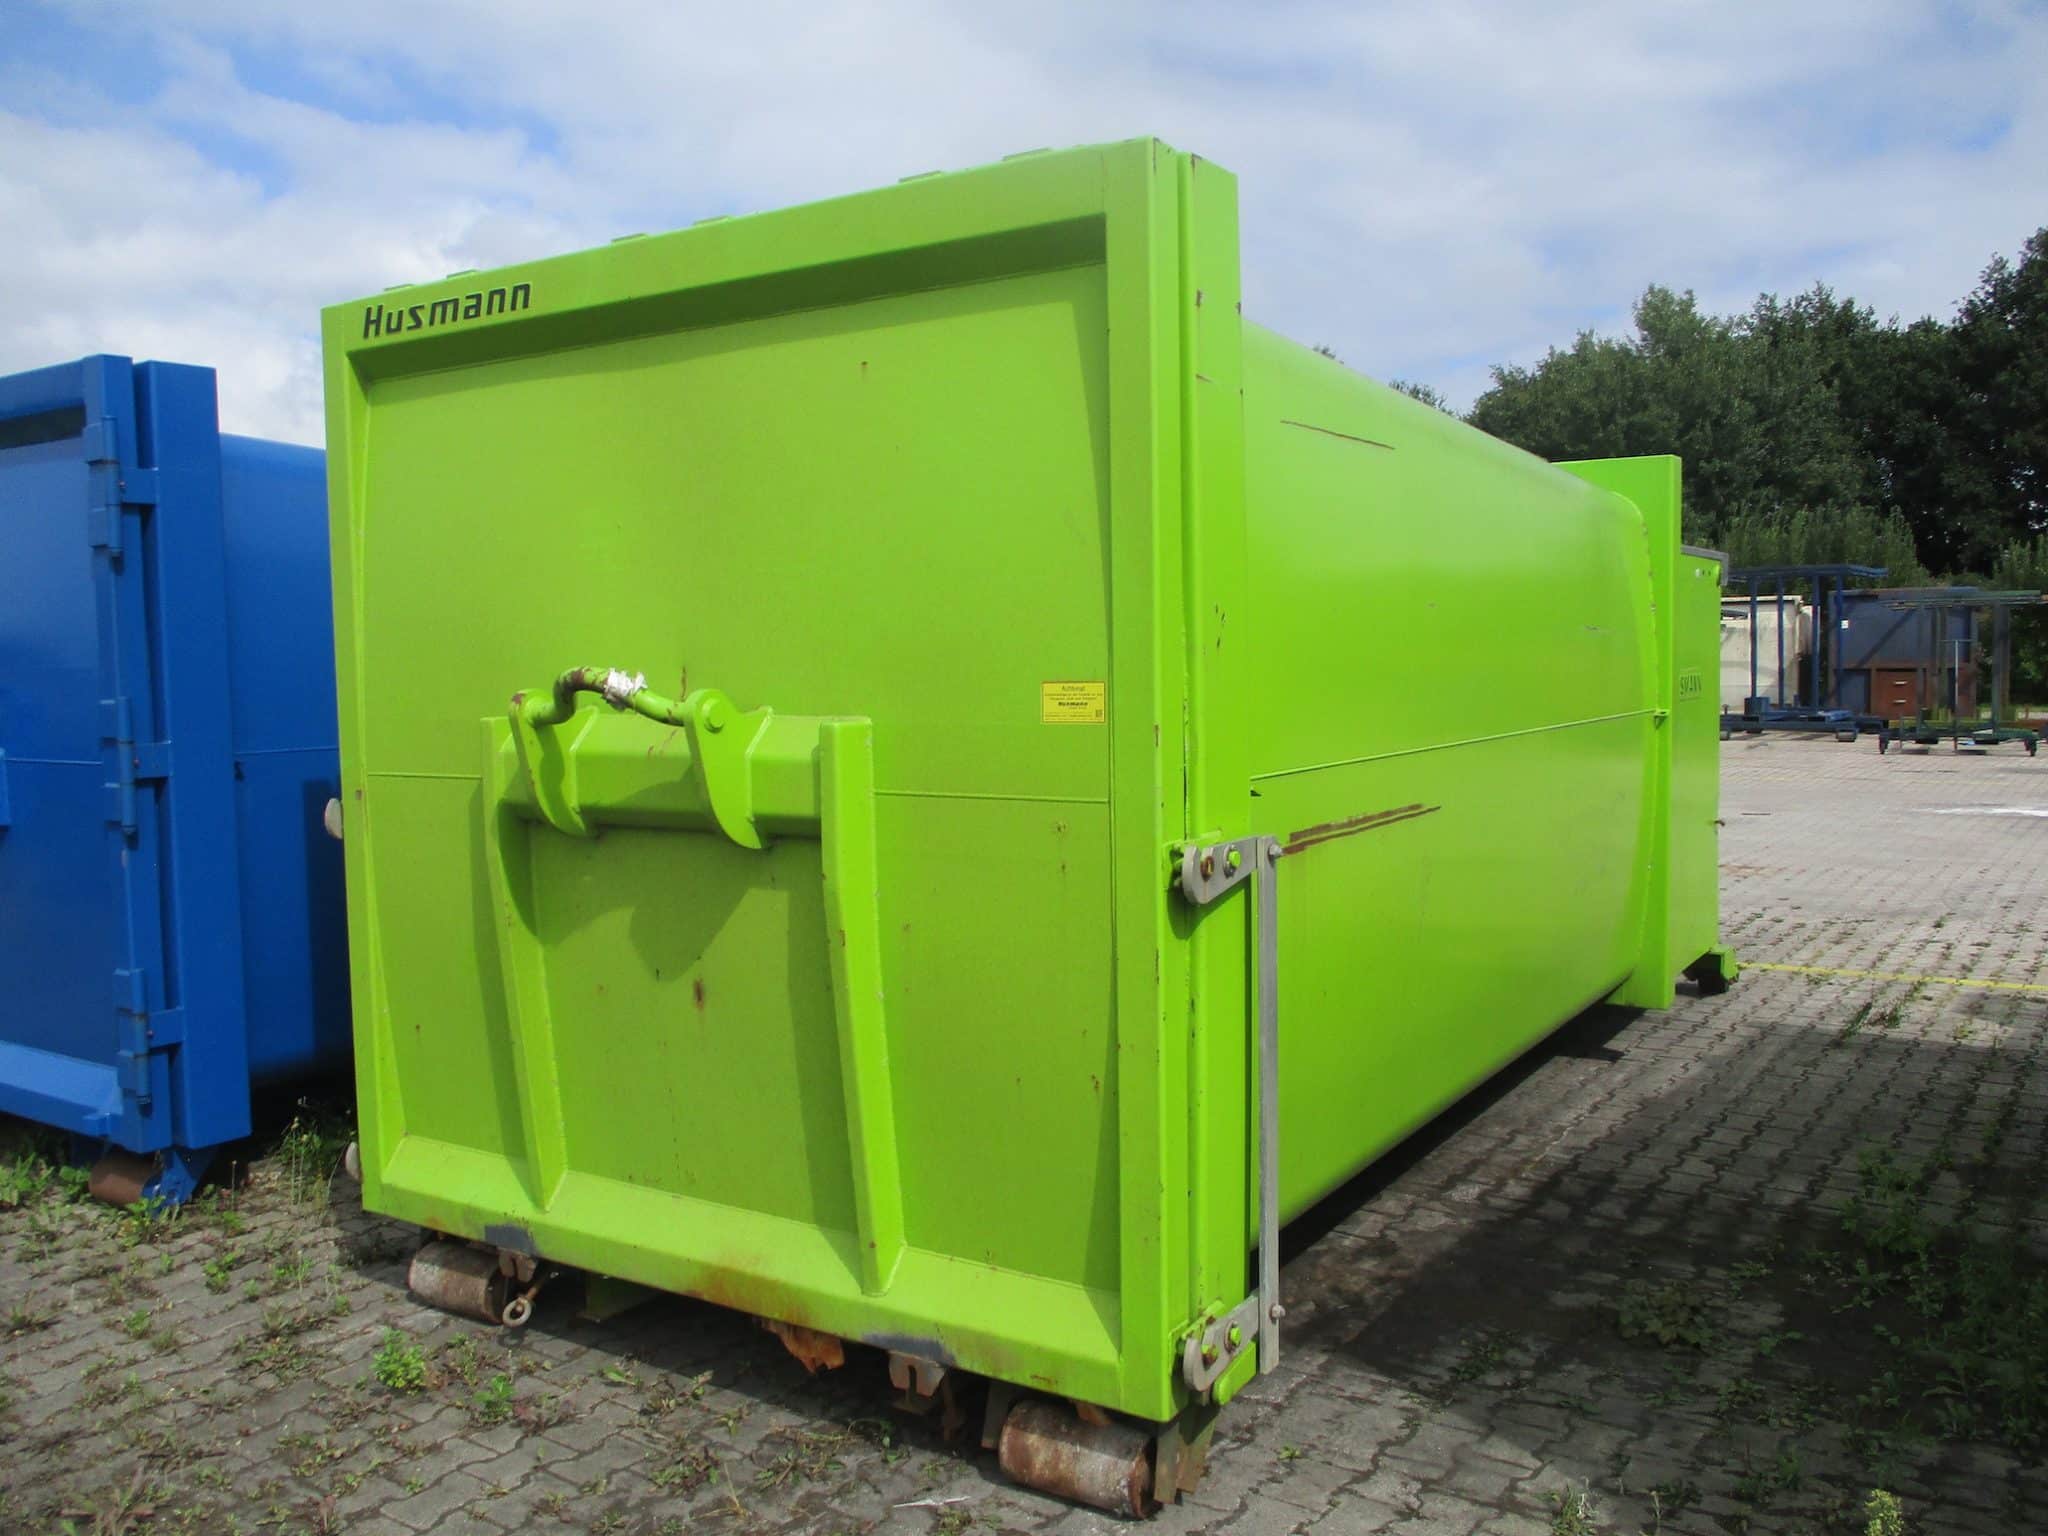 IMG 5106 scaled - Presscontainer SPB 20 SW-E Husmann BJ 2016 flüssigkeitsdicht